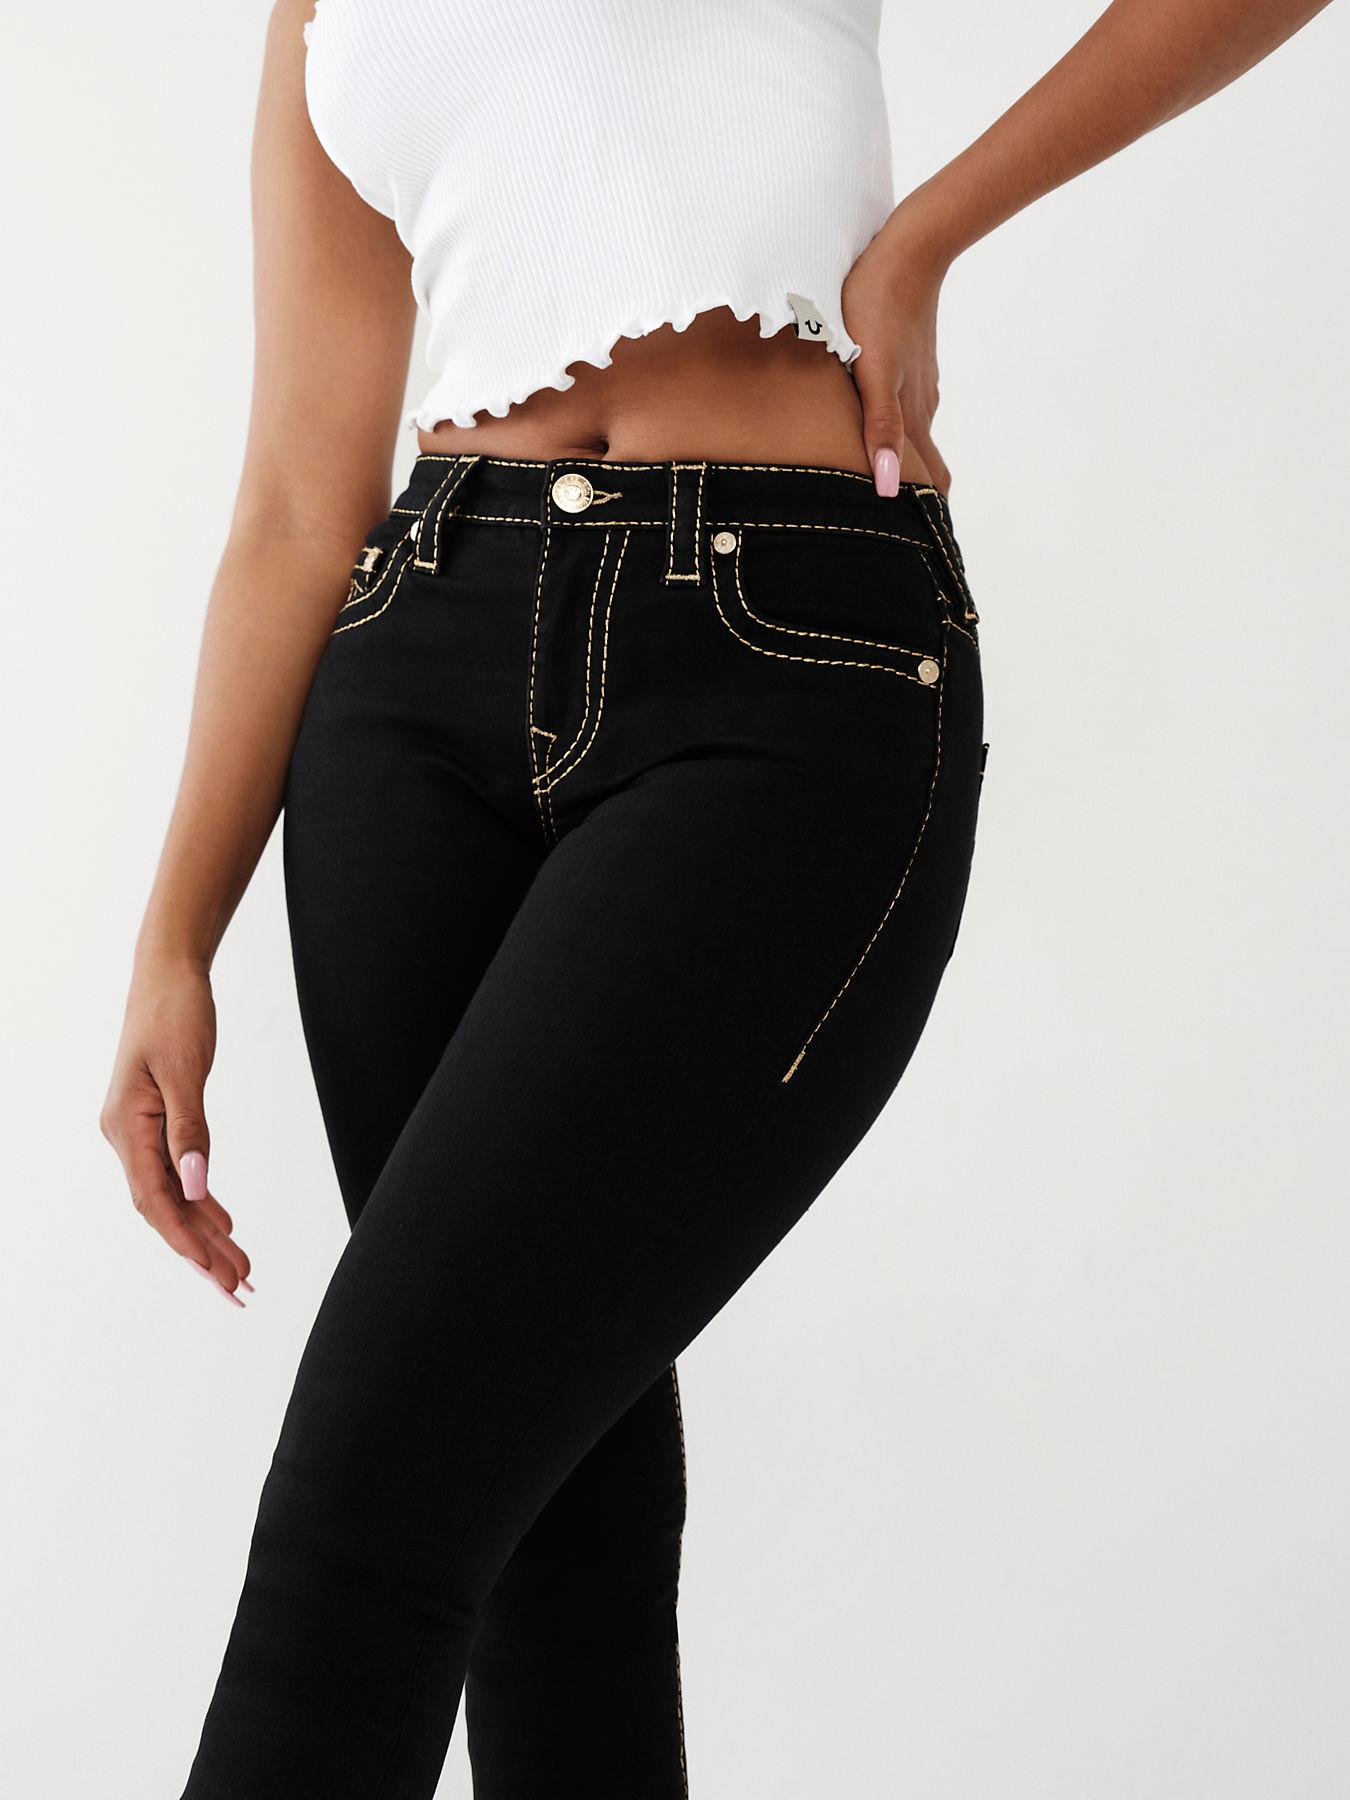 True Religion Jennie Big T Curvy Skinny Jean in Black | Lyst